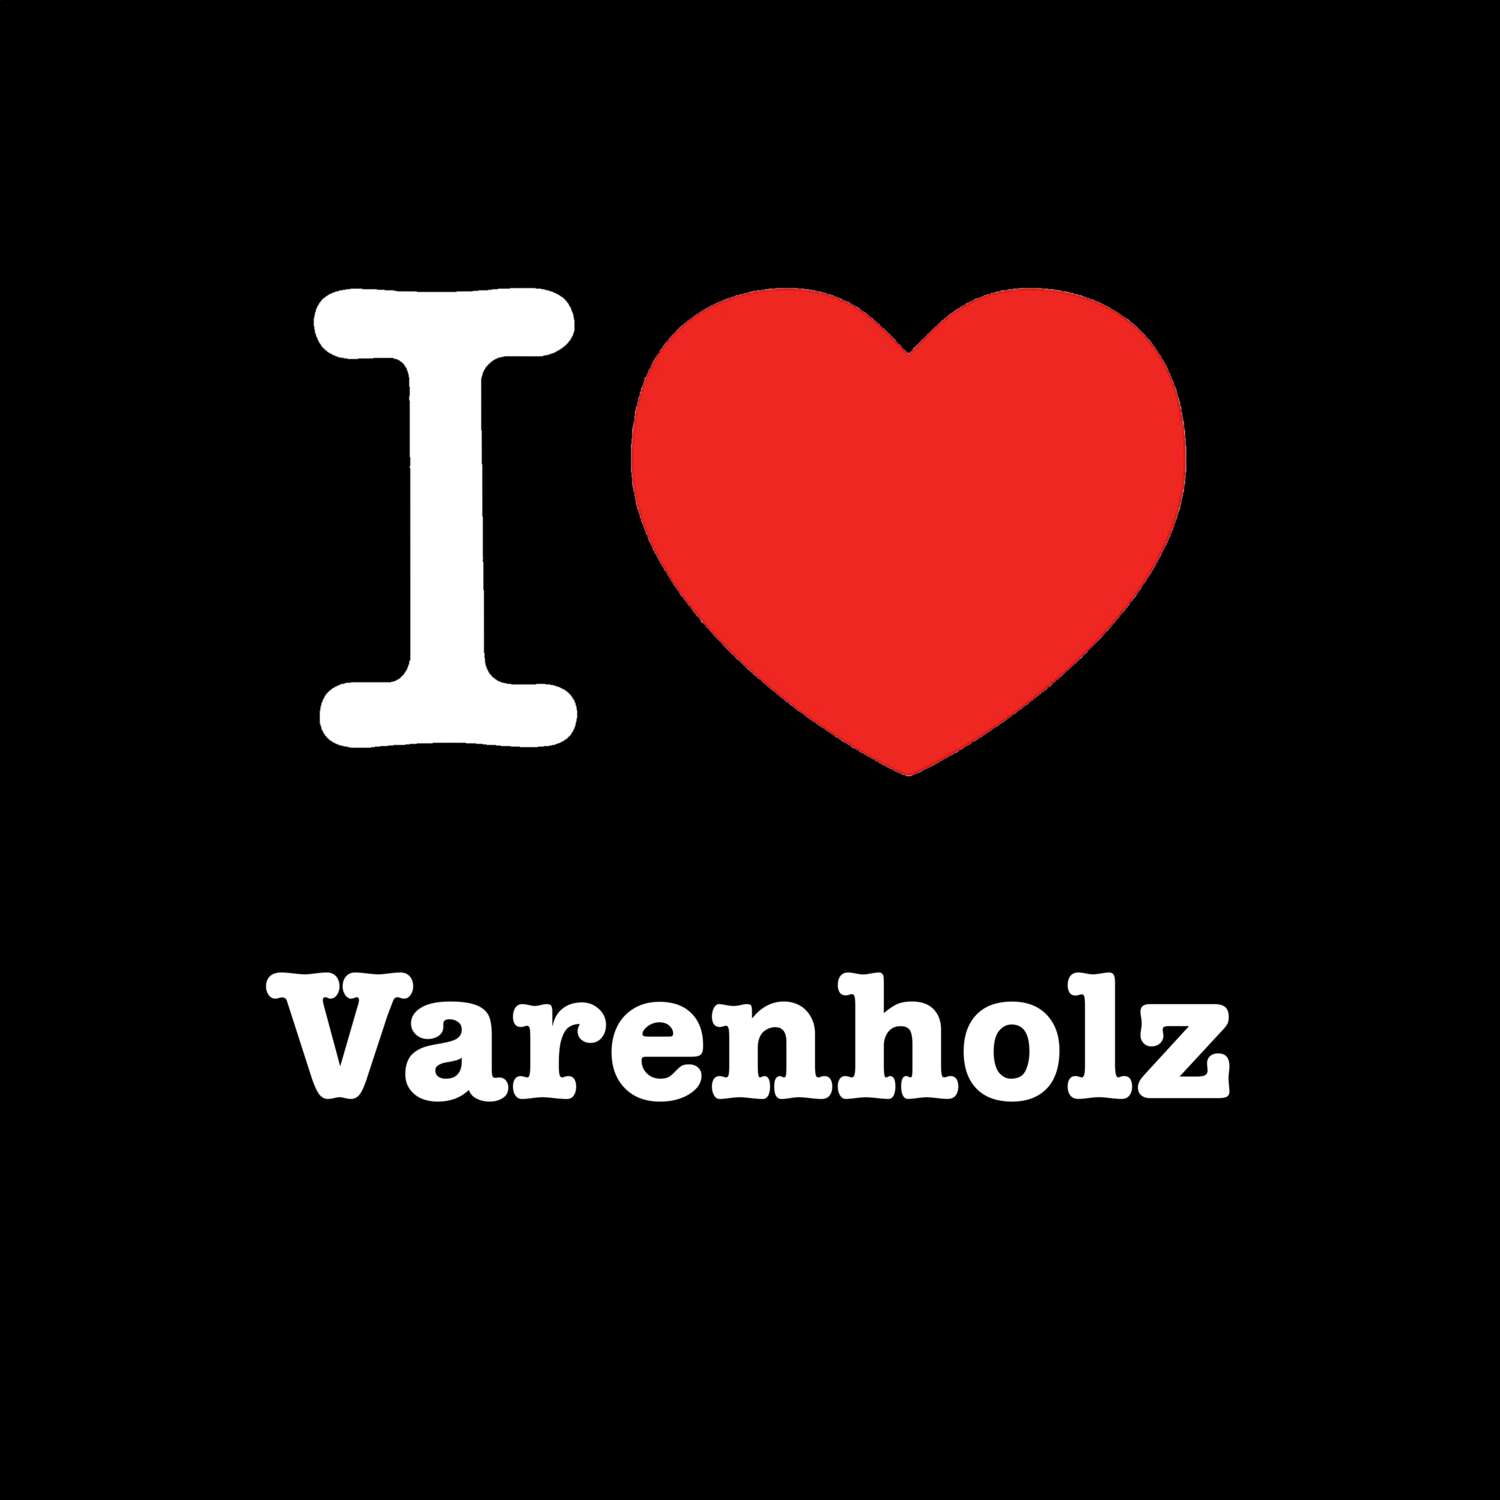 Varenholz T-Shirt »I love«